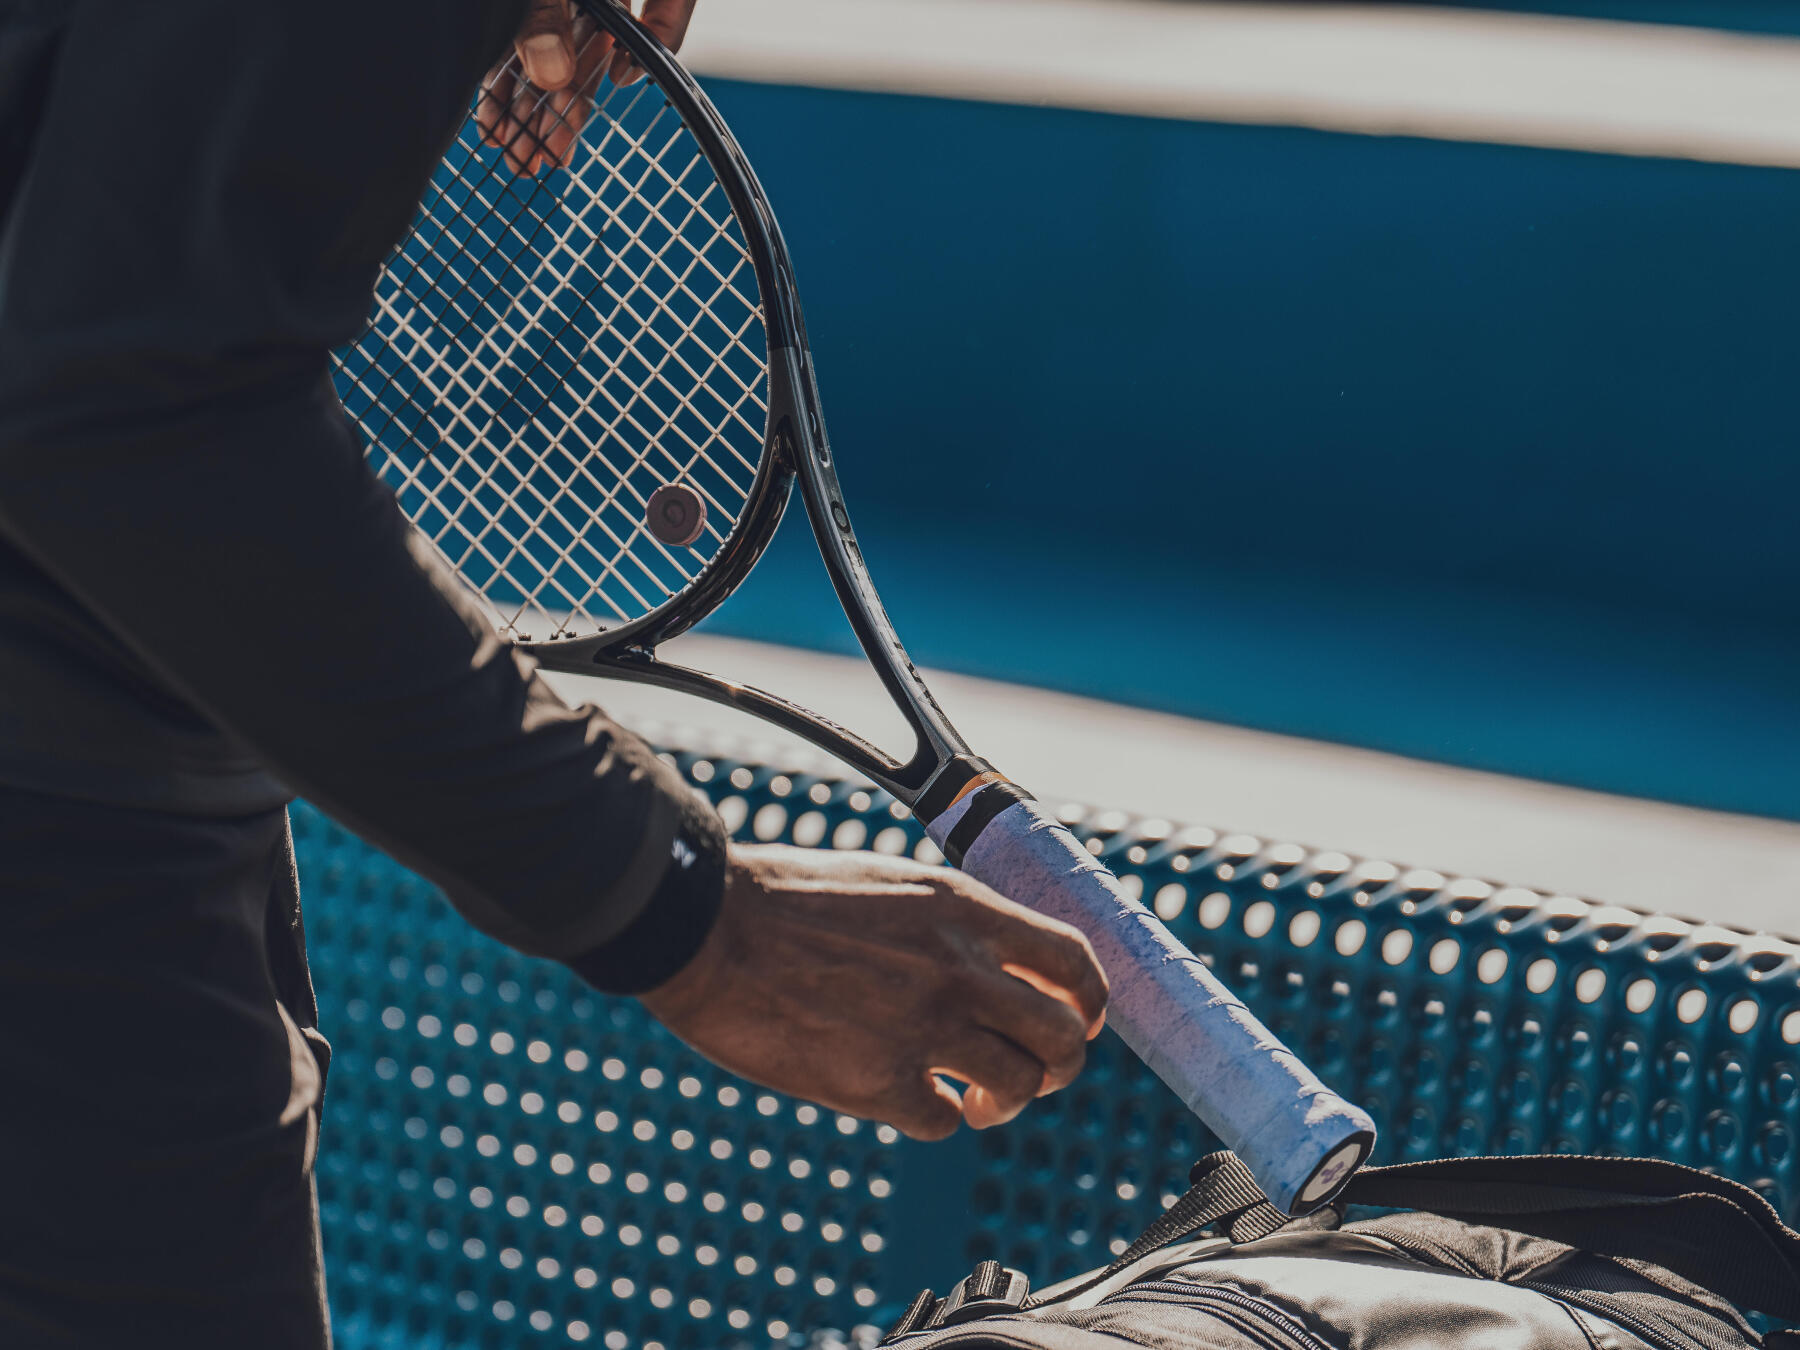 Cuál es tensión correcta para el cordaje una raqueta tenis?